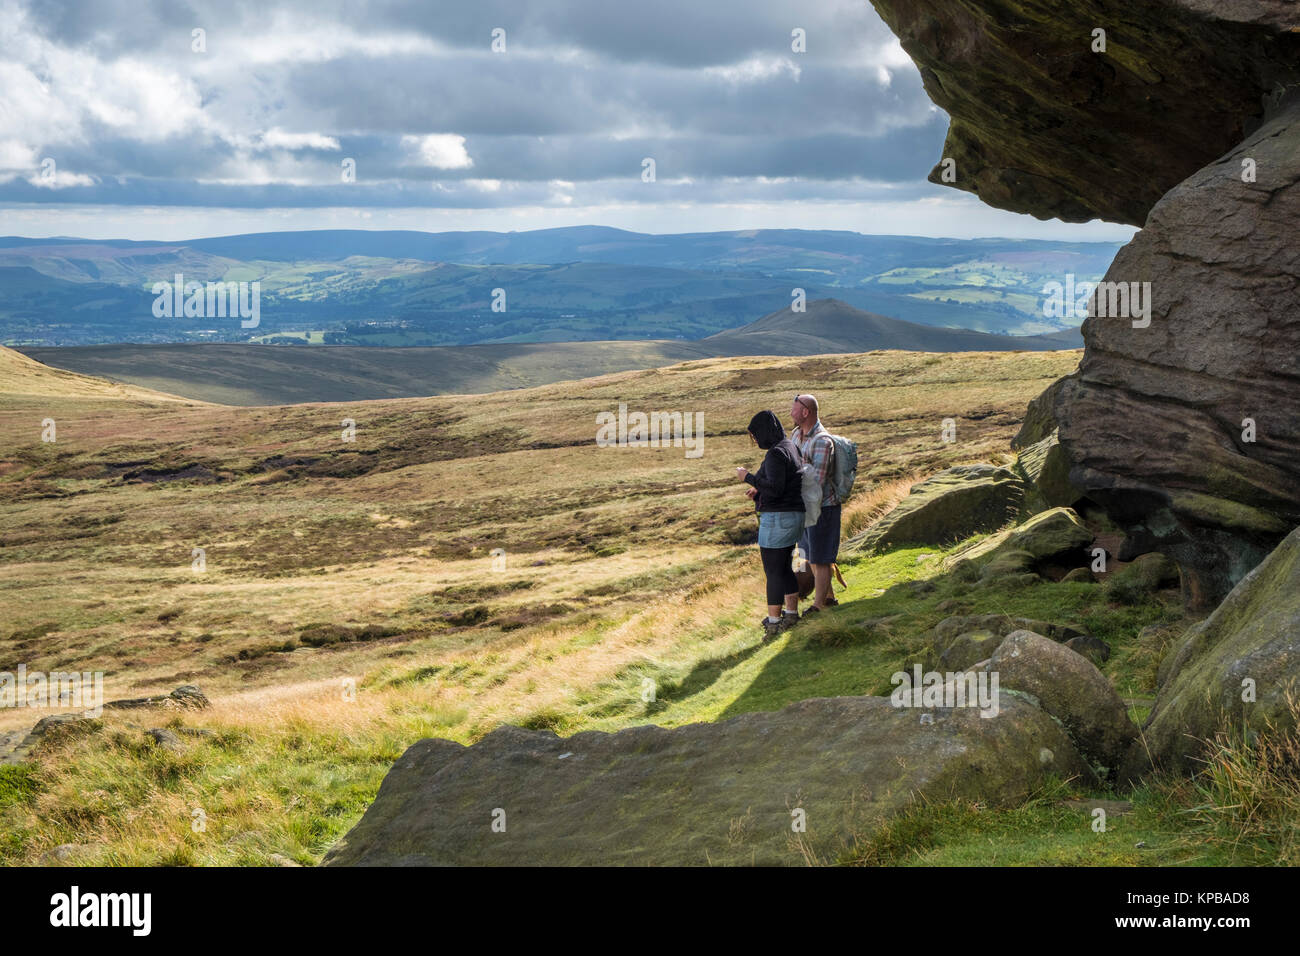 Die spaziergänger in der Nähe von Edale Felsen anzeigen Der moorlandschaft Landschaft und den Ausblick auf die malerische Landschaft, Kinder Scout, Derbyshire, Peak District, England, Großbritannien Stockfoto